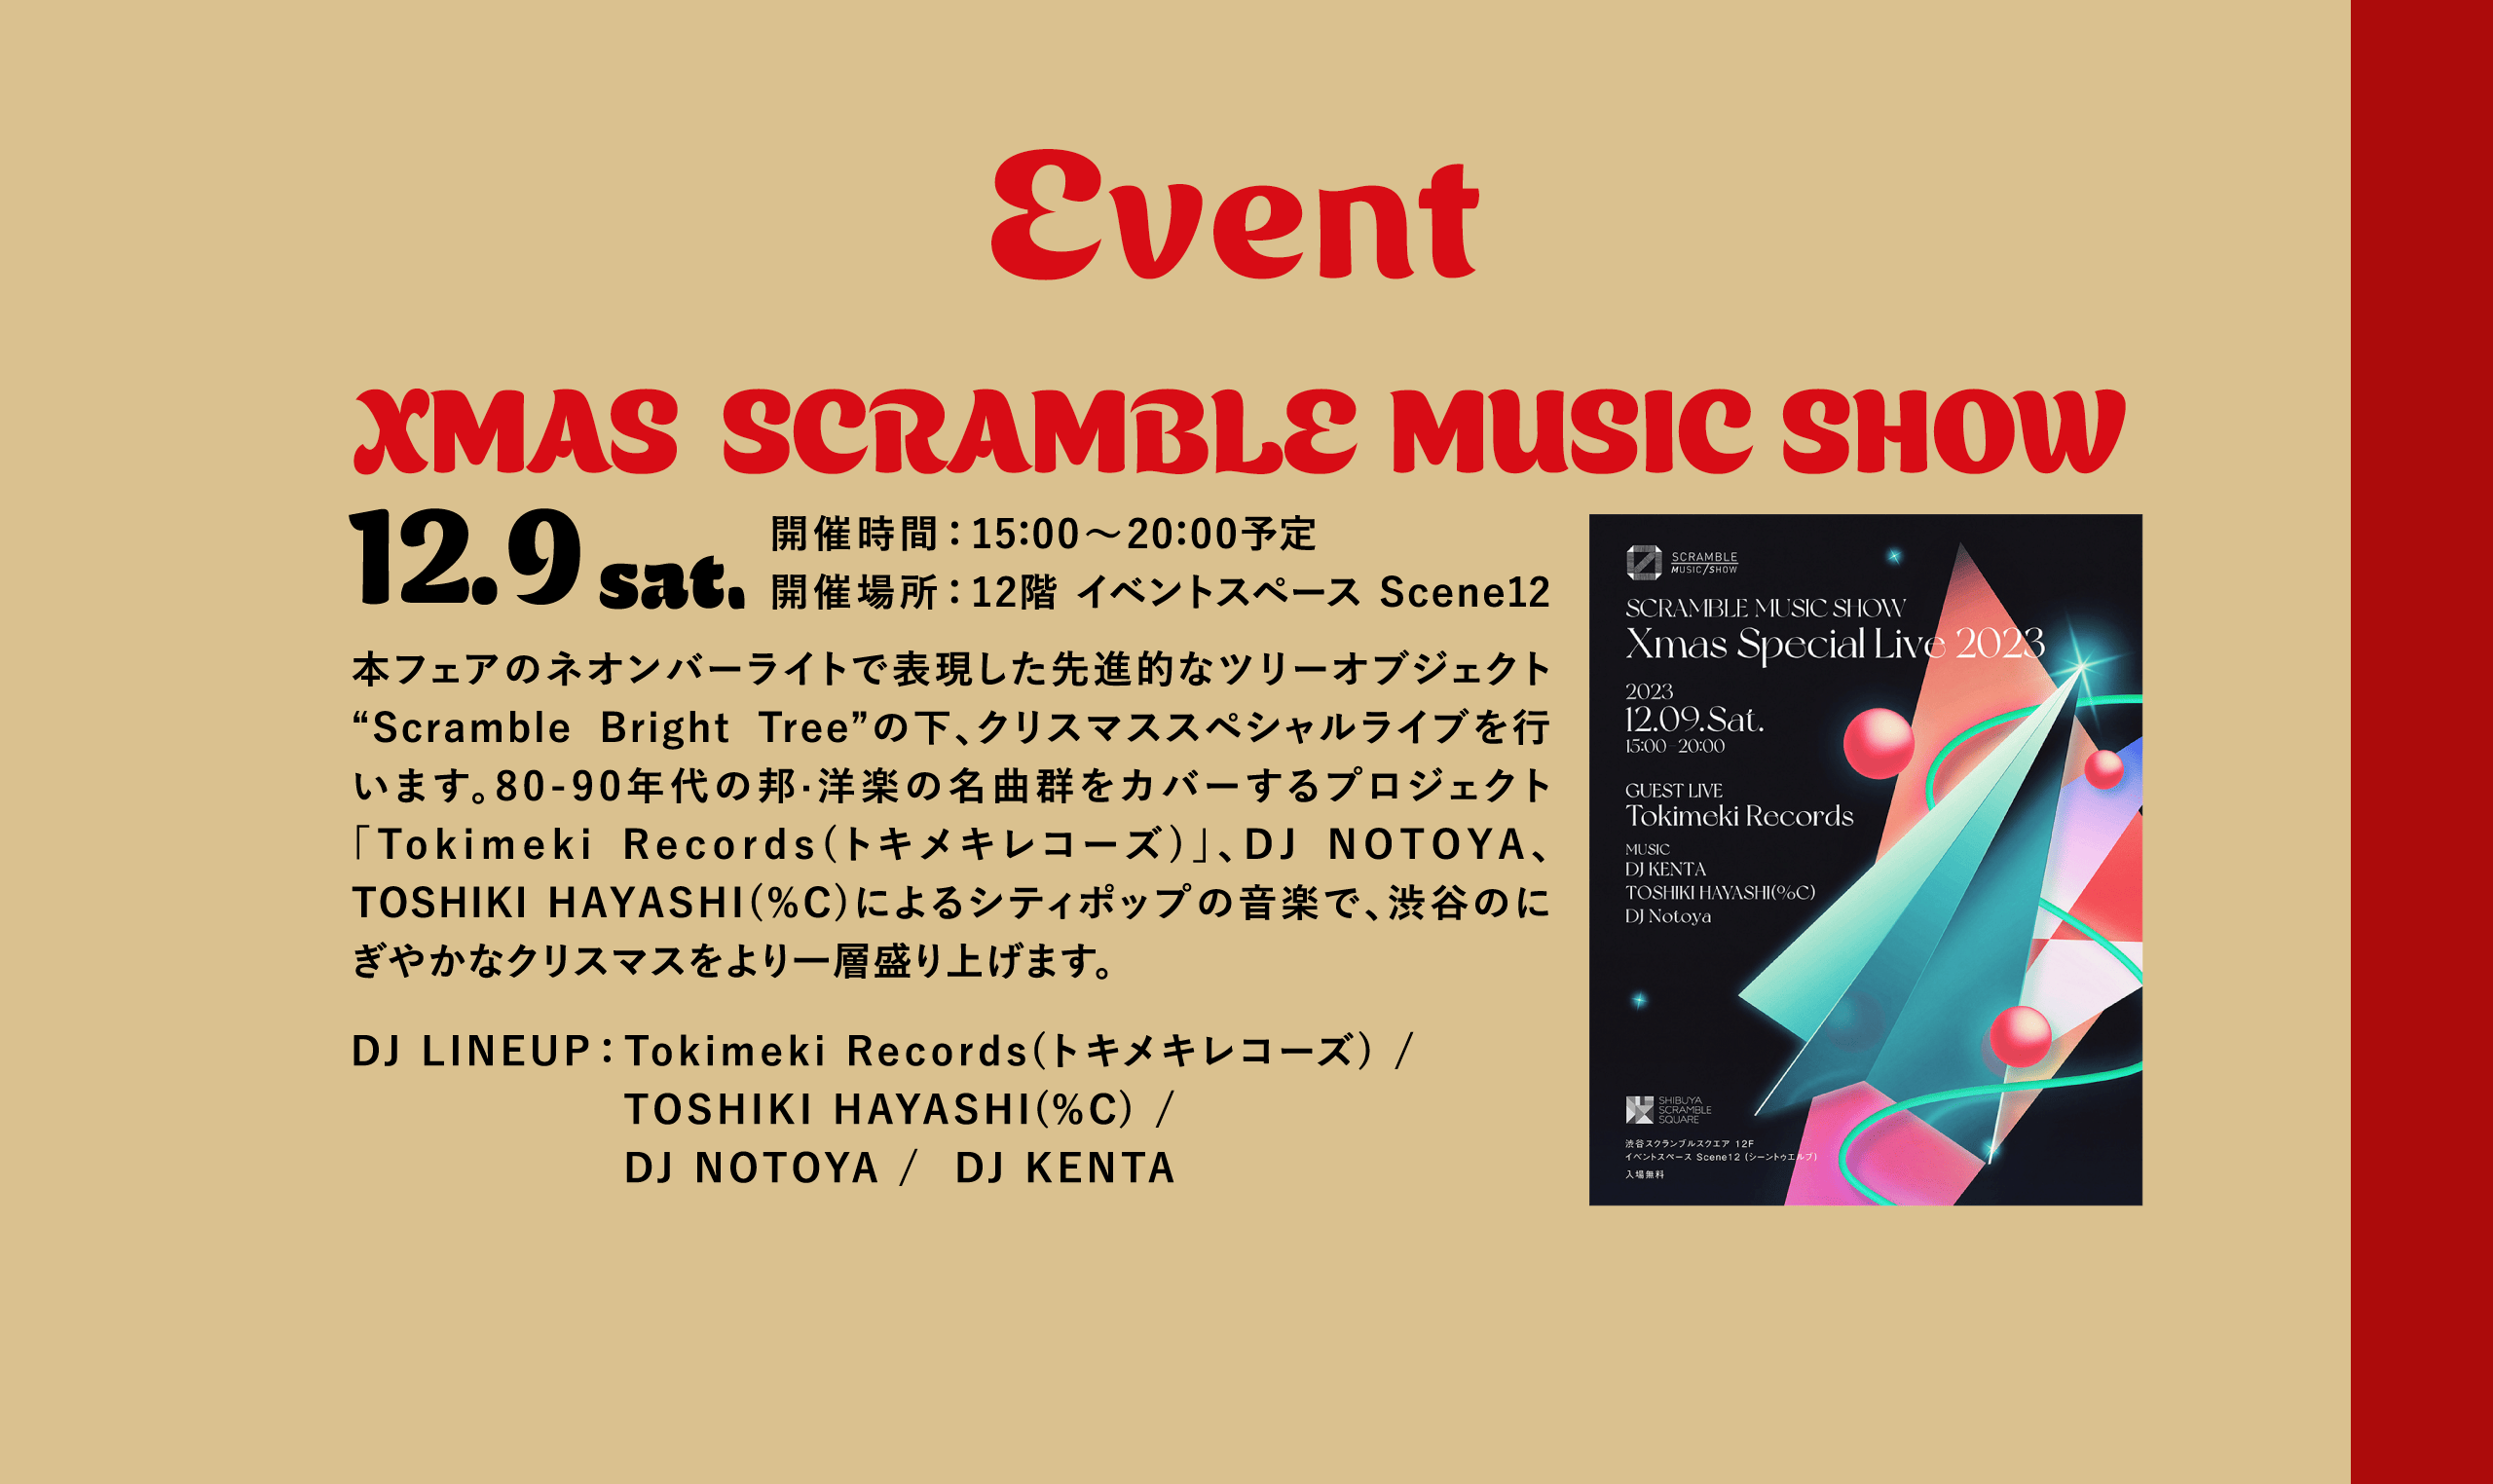 Event XMAS SCRAMBLE MUSIC SHOW 12.9 sat.開催時間：15：00～20：00予定開催場所：12階 イベントスペース Scene12 本フェアのネオンバーライトで表現した先進的なツリーオブジェクト“Scramble Bright Tree”の下、クリスマススペシャルライブを行います。80-90年代の邦·洋楽の名曲群をカバーするプロジェクト「Tokimeki Records(トキメキレコーズ)」、DJ NOTOYA、TOSHIKI HAYASHI(%C)によるシティポップの音楽で、渋谷のにぎやかなクリスマスをより一層盛り上げます。DJ LINEUP：Tokimeki Records(トキメキレコーズ) / TOSHIKI HAYASHI(%C) / DJ NOTOYA /  DJ KENTA